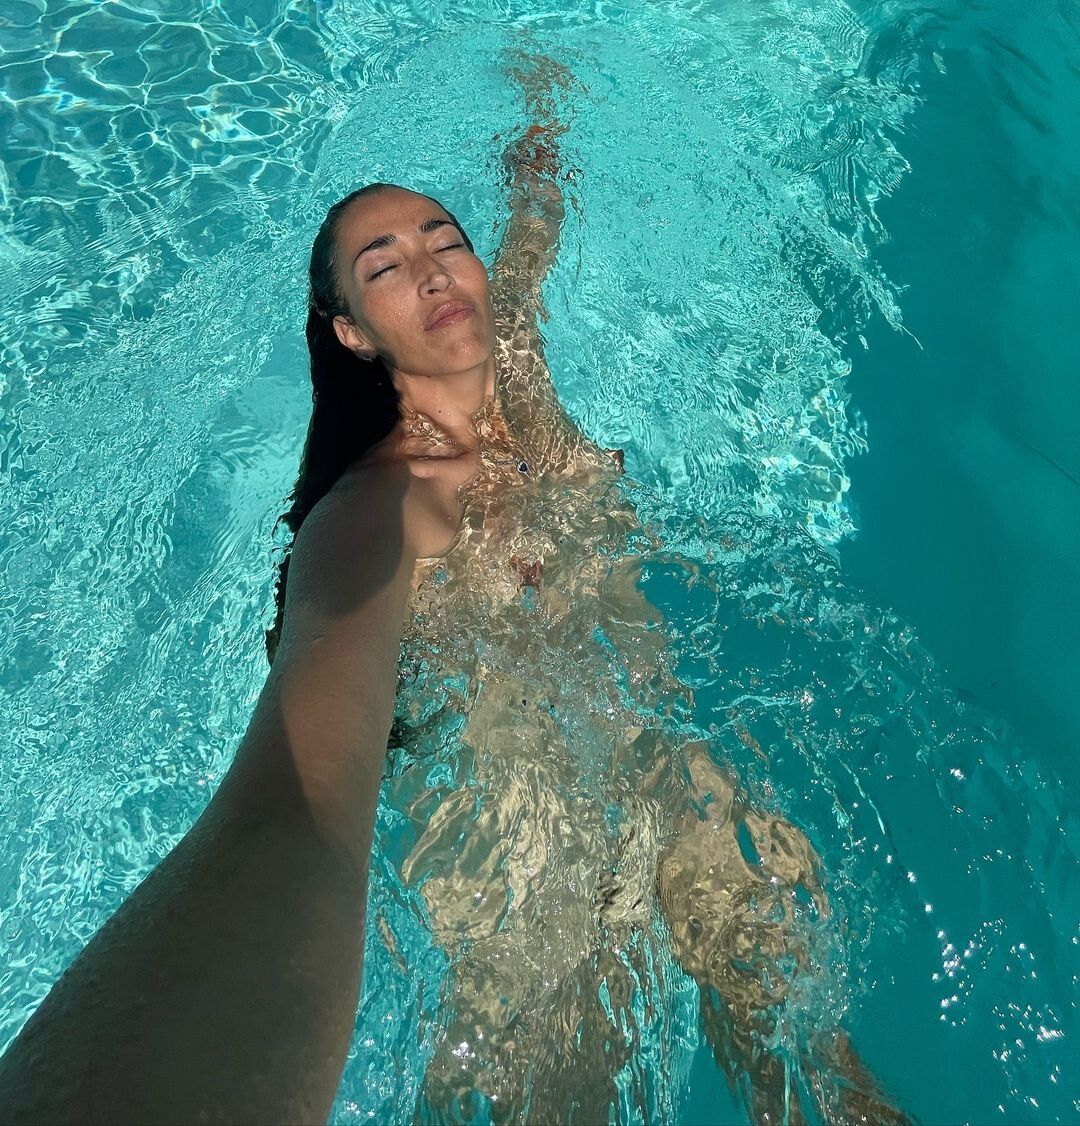 Nina Zilli Scatena i Follower con le foto nuda in piscina: “Sono Nuda ma non si Vede Niente”